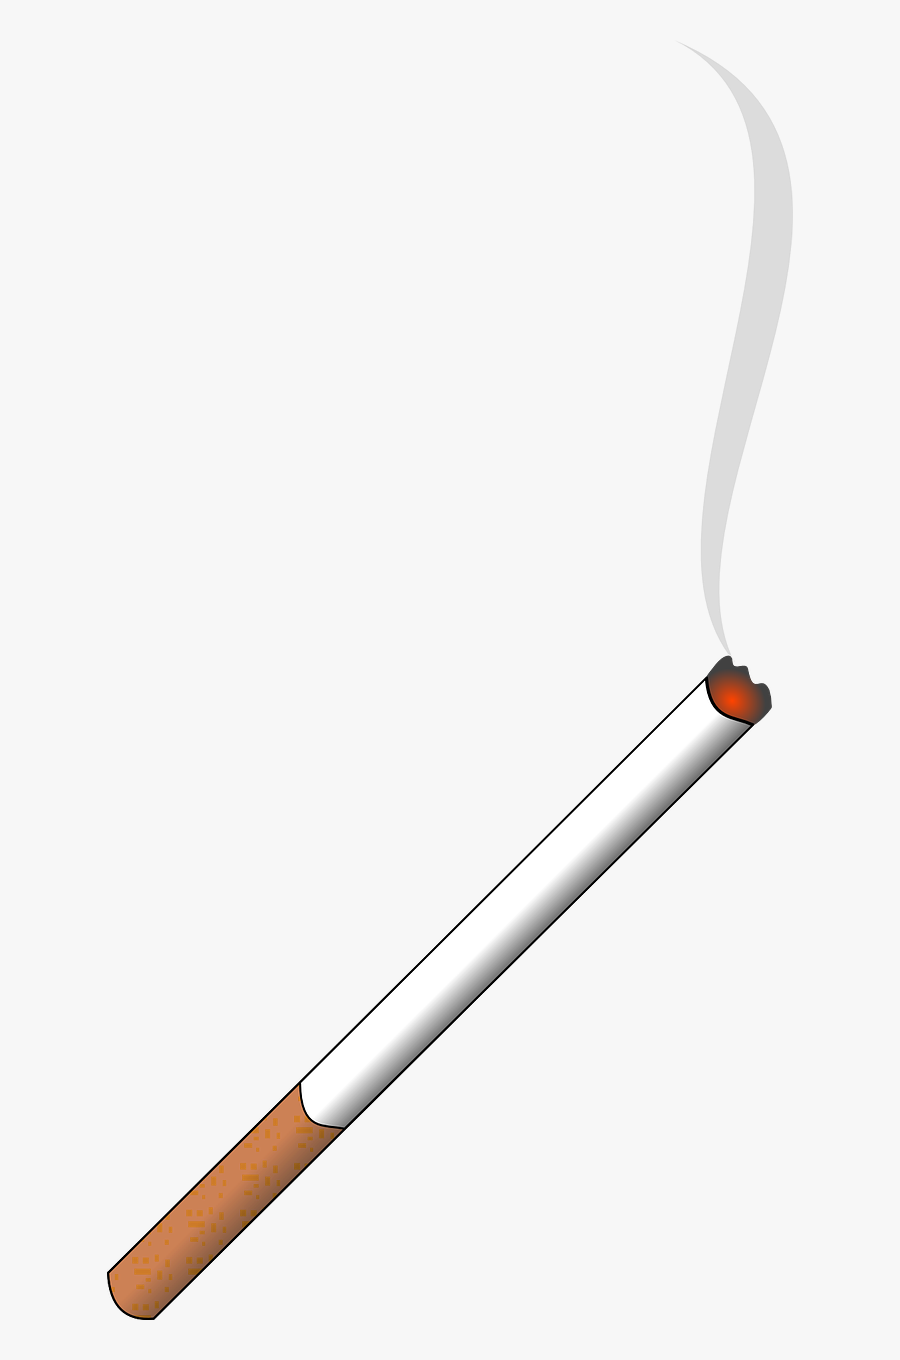 Lit Cigarette - Cigarette Clipart No Background, Transparent Clipart